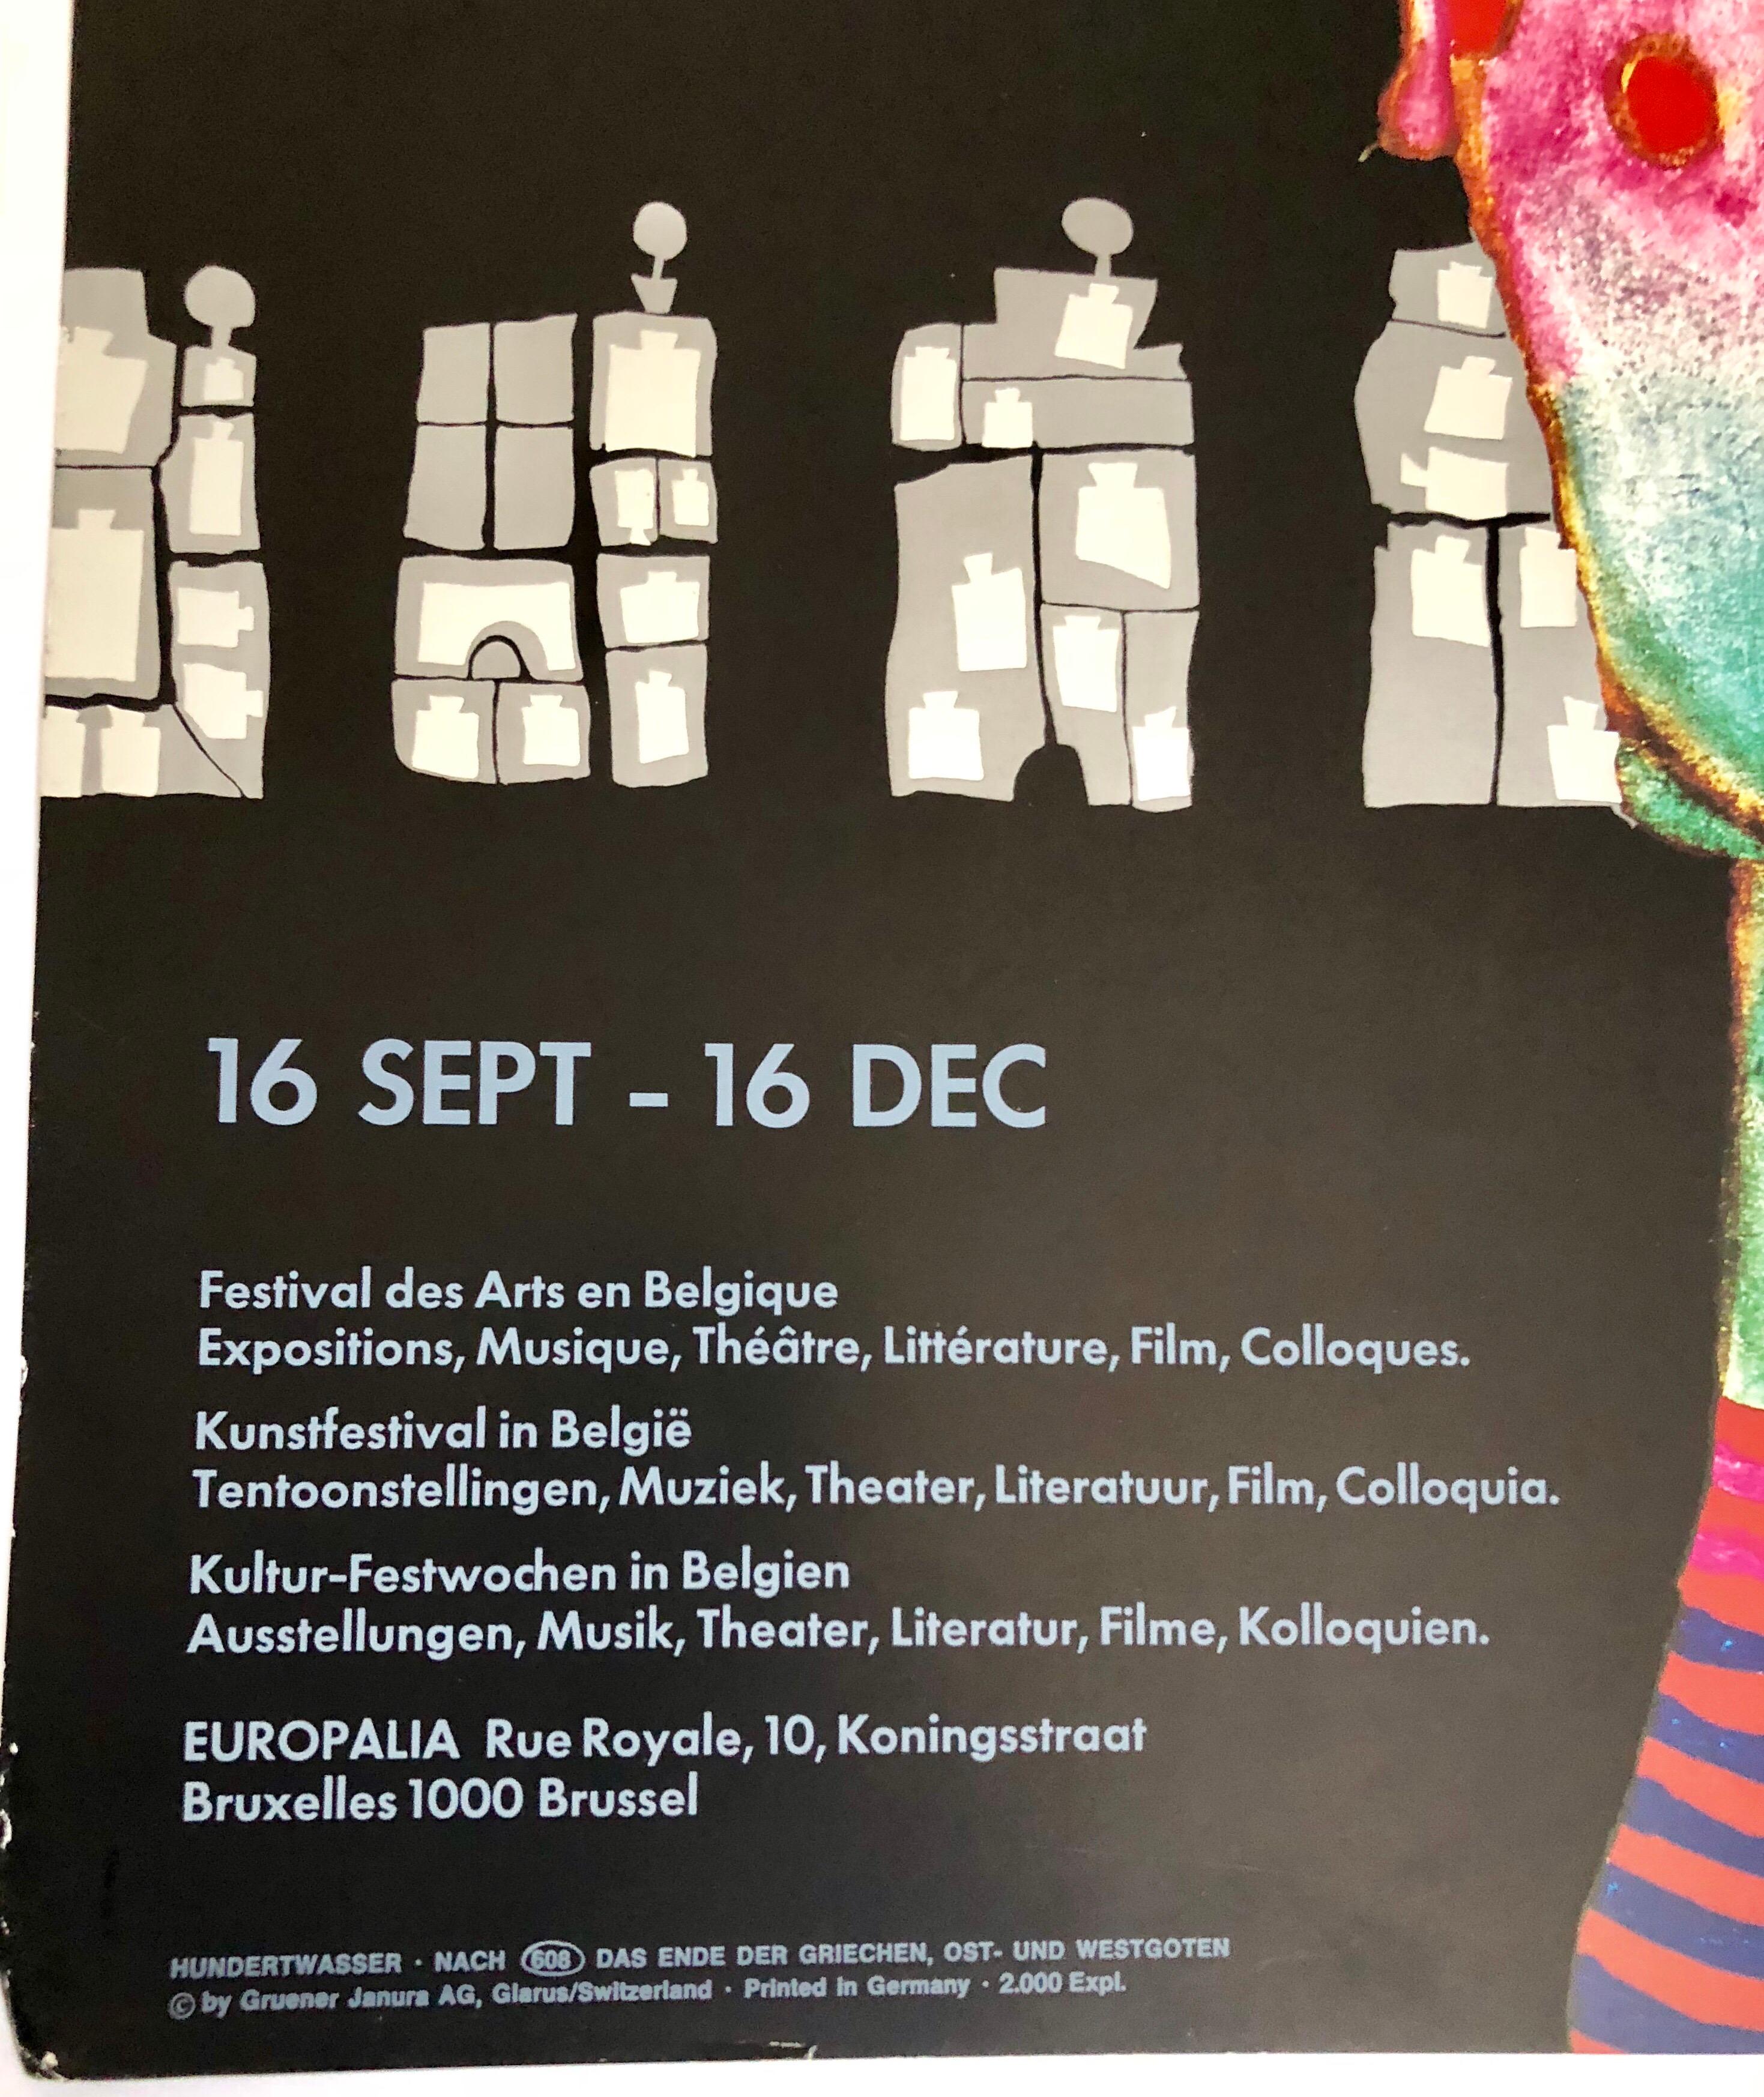 Europalia 87 Oesterreich (Autriche) par Friedrich Hundertwasser - affiche originale vintage - lithographie offset avec insertions de feuilles métalliques fine art  imprimer
Copyright by Gruener Janura AG, Glarus/ Suisse. Imprimé en